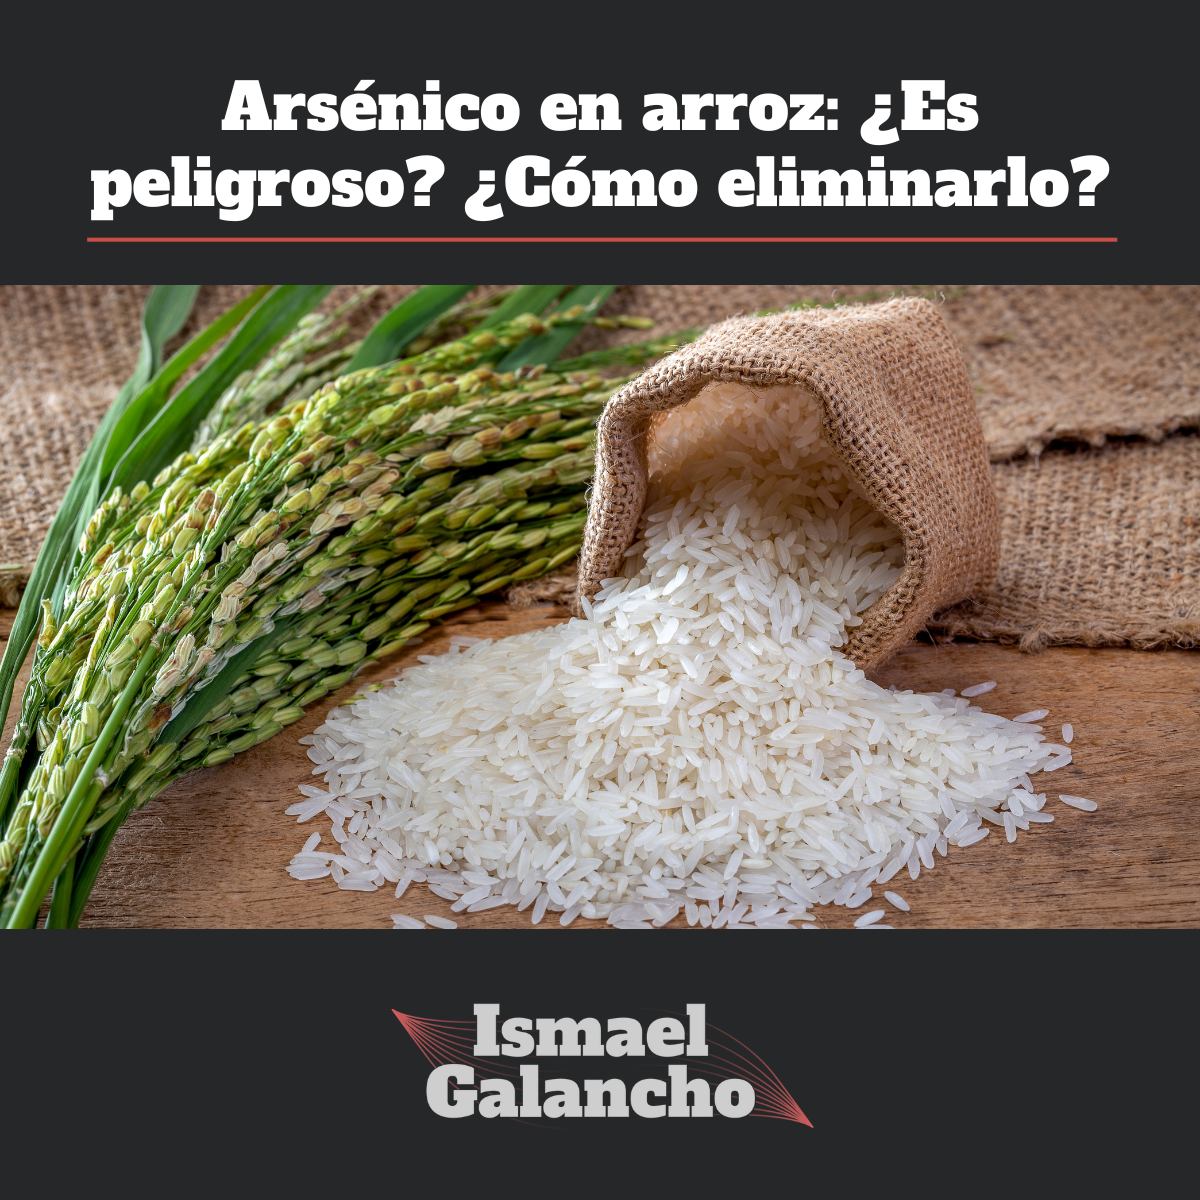 Arsénico en arroz: ¿Es peligroso? ¿Cómo eliminarlo?